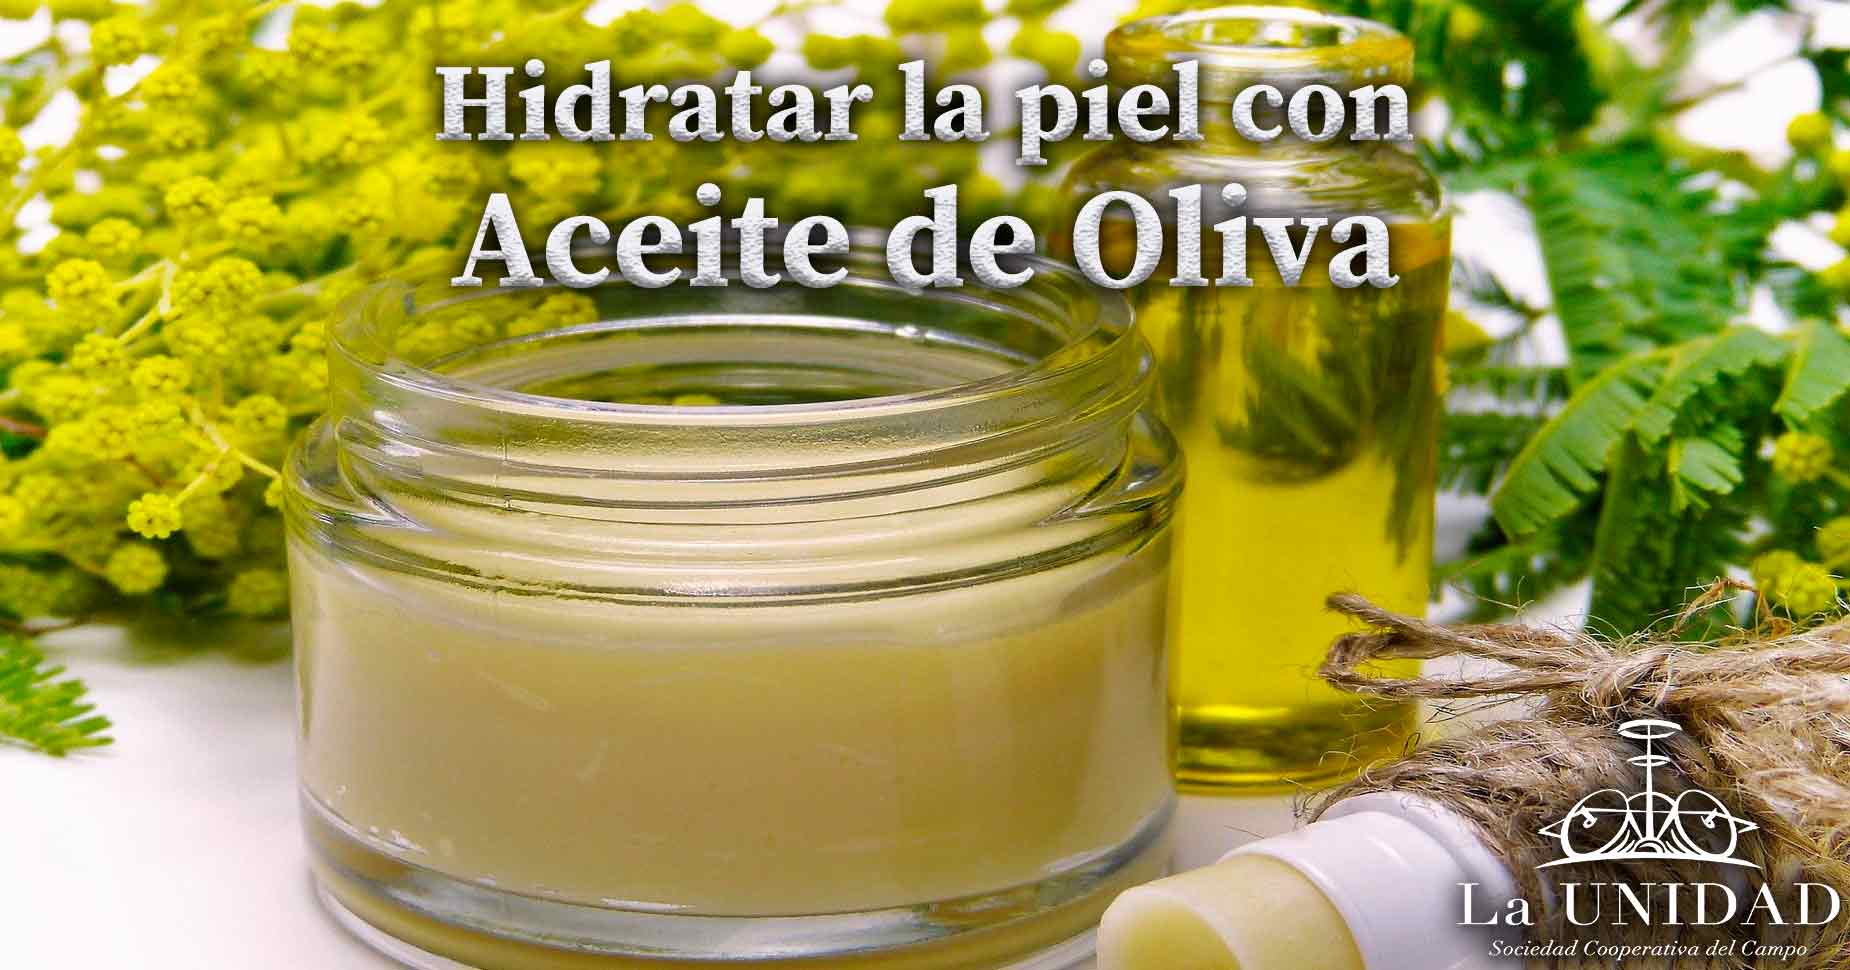 Hidratar la piel con Aceite de Oliva